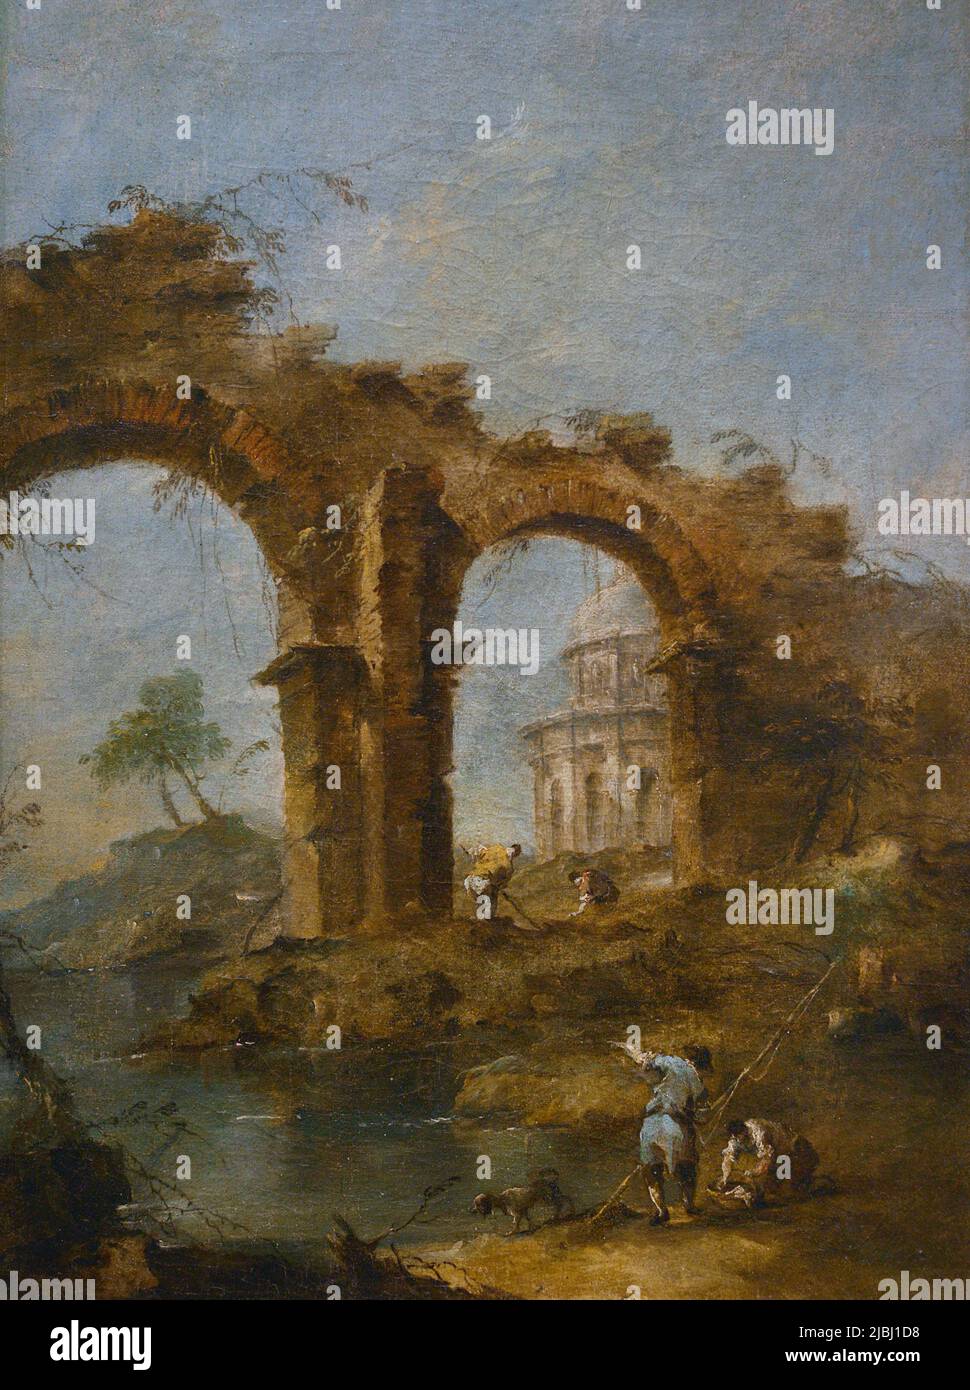 Francesco Guardi (1712-1793). Pittore veneziano. Caprice (Capriccio), ca. 1770-1780. Olio su tela. Museo Calouste Gulbenkian. Lisbona. Portogallo. Foto Stock